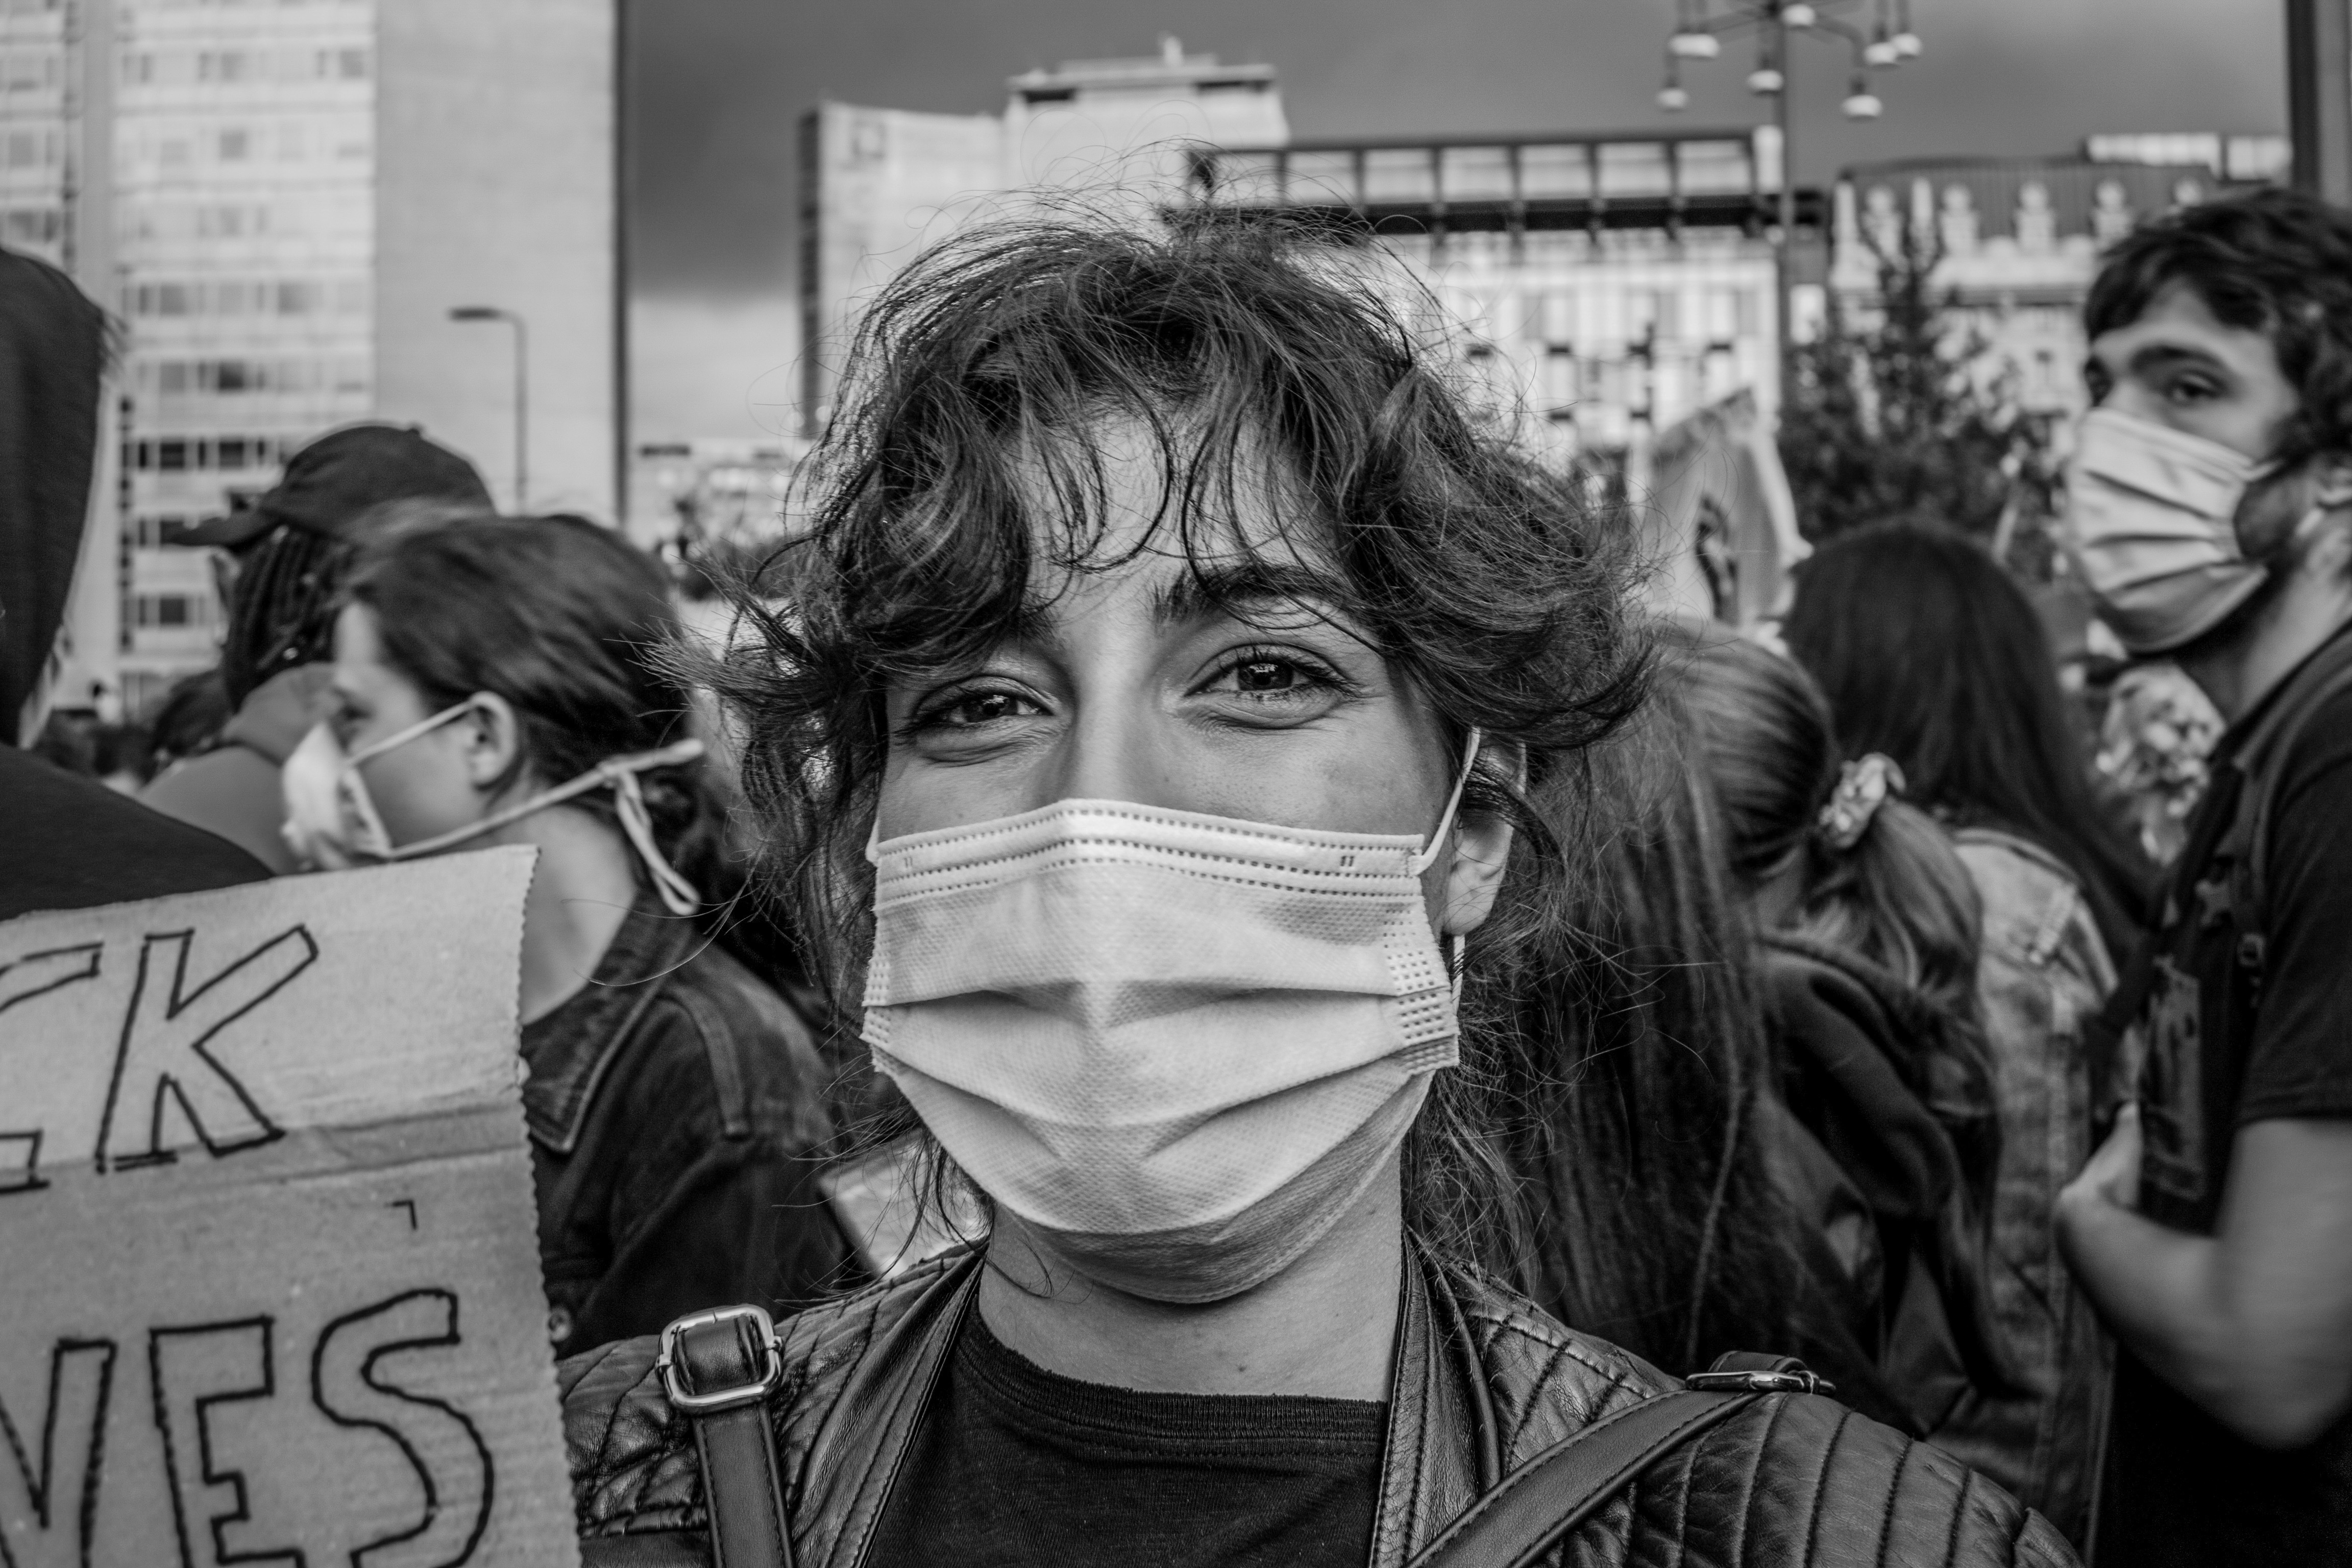 Una ragazza sorride a ridosso della fine della manifestazione (foto di Luca Covino)